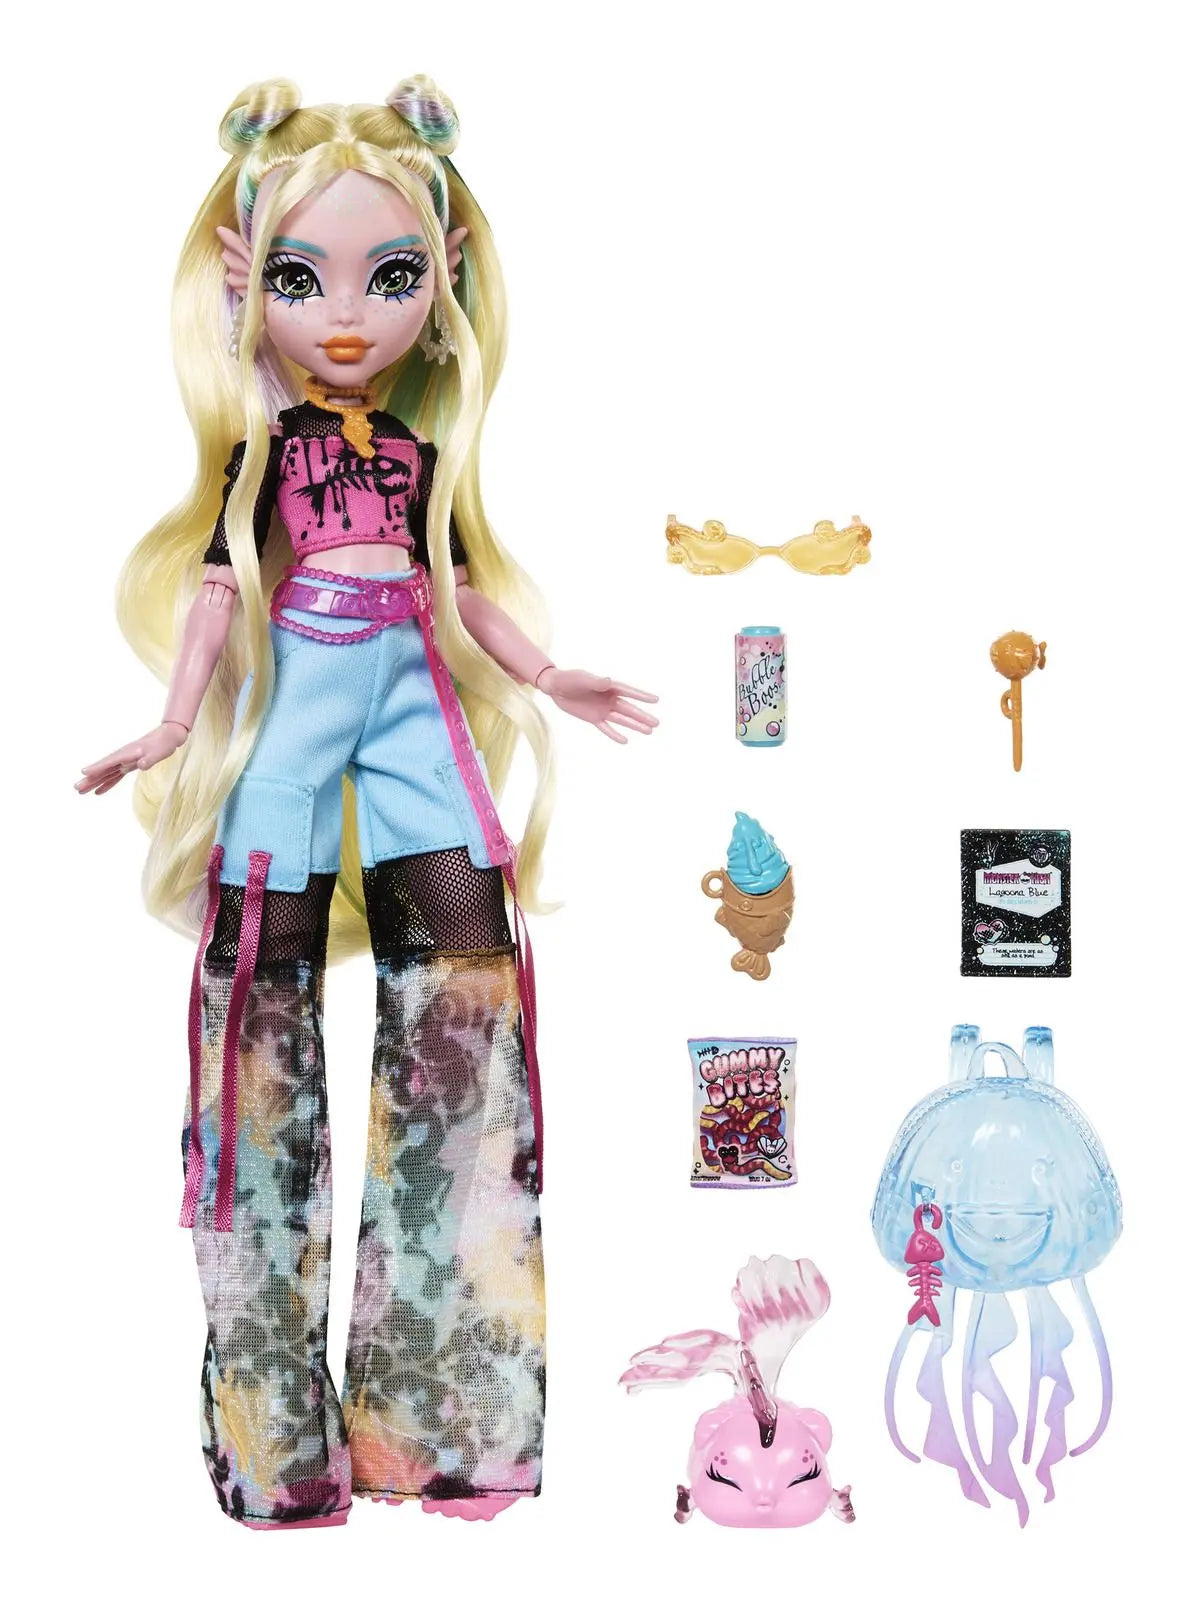 Monster High Lagoona Blue Doll Monster High